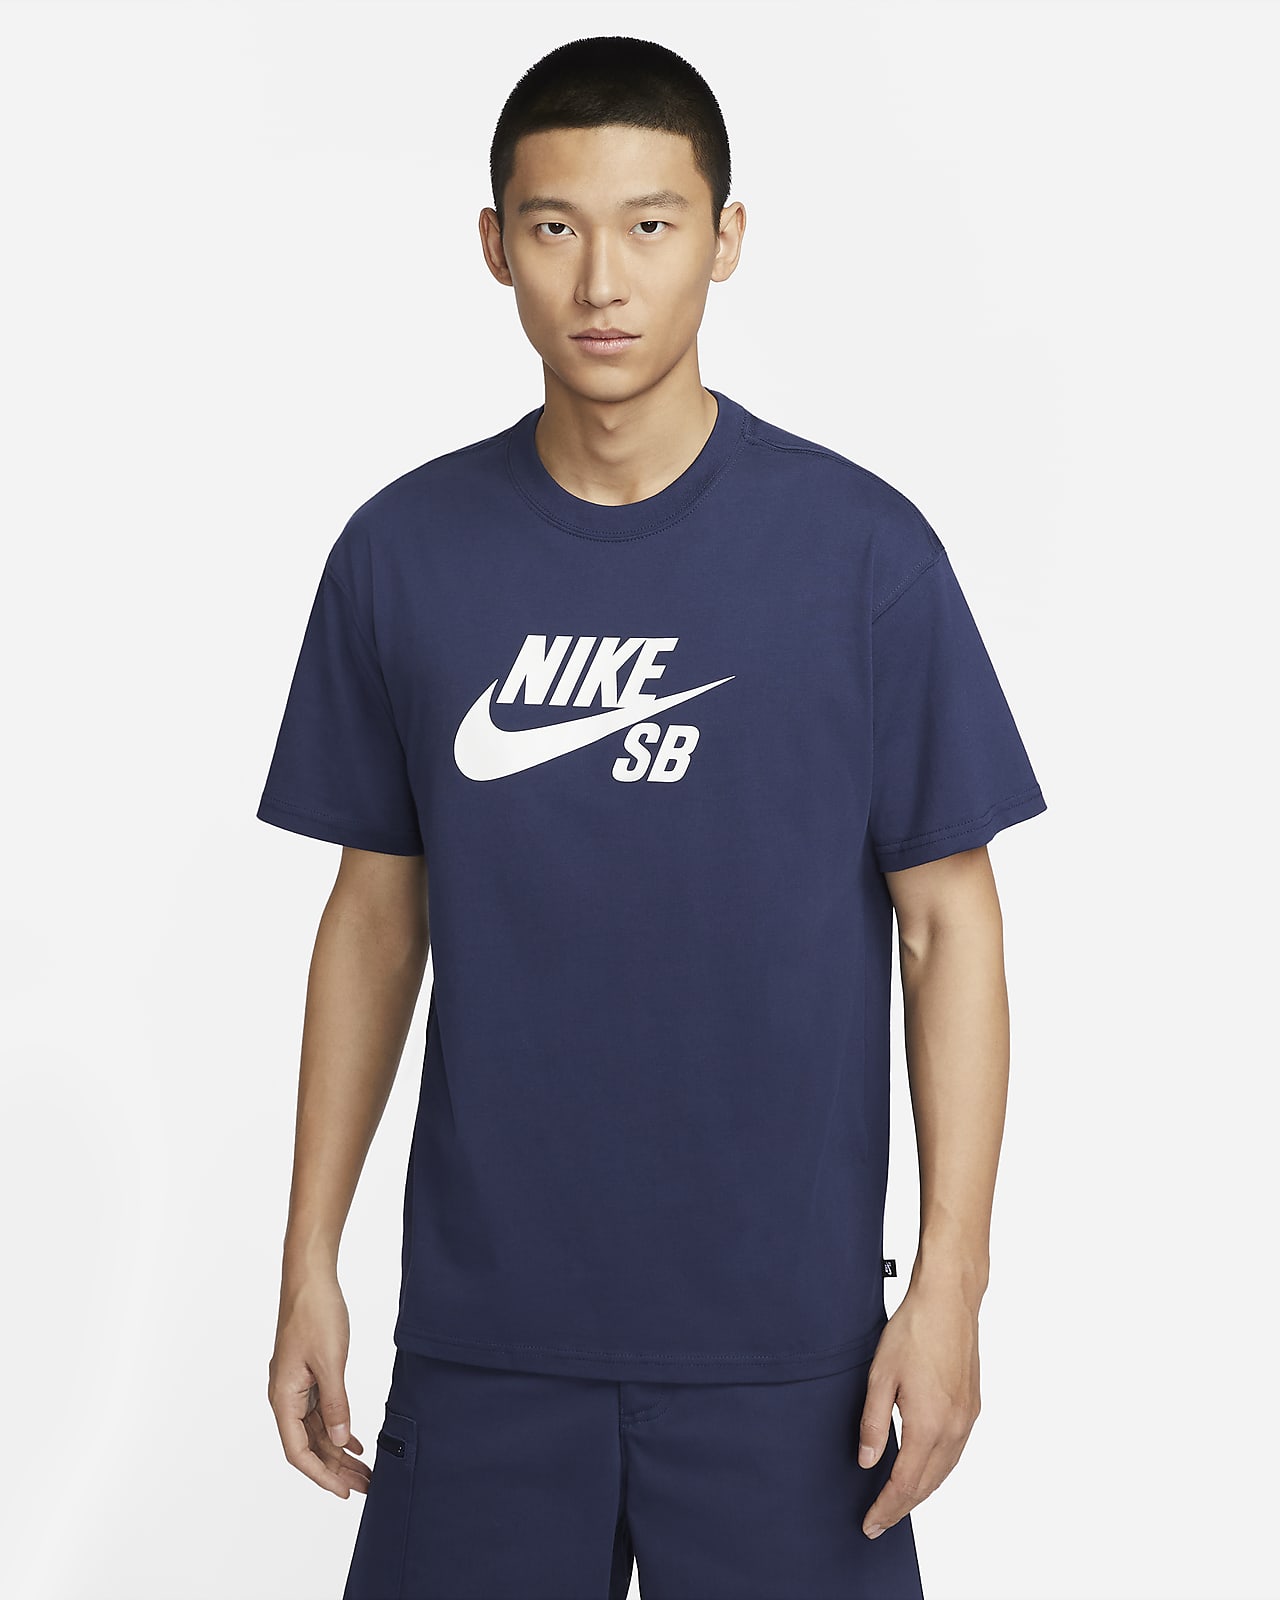 เสื้อยืดสเก็ตบอร์ดมีโลโก้ Nike SB